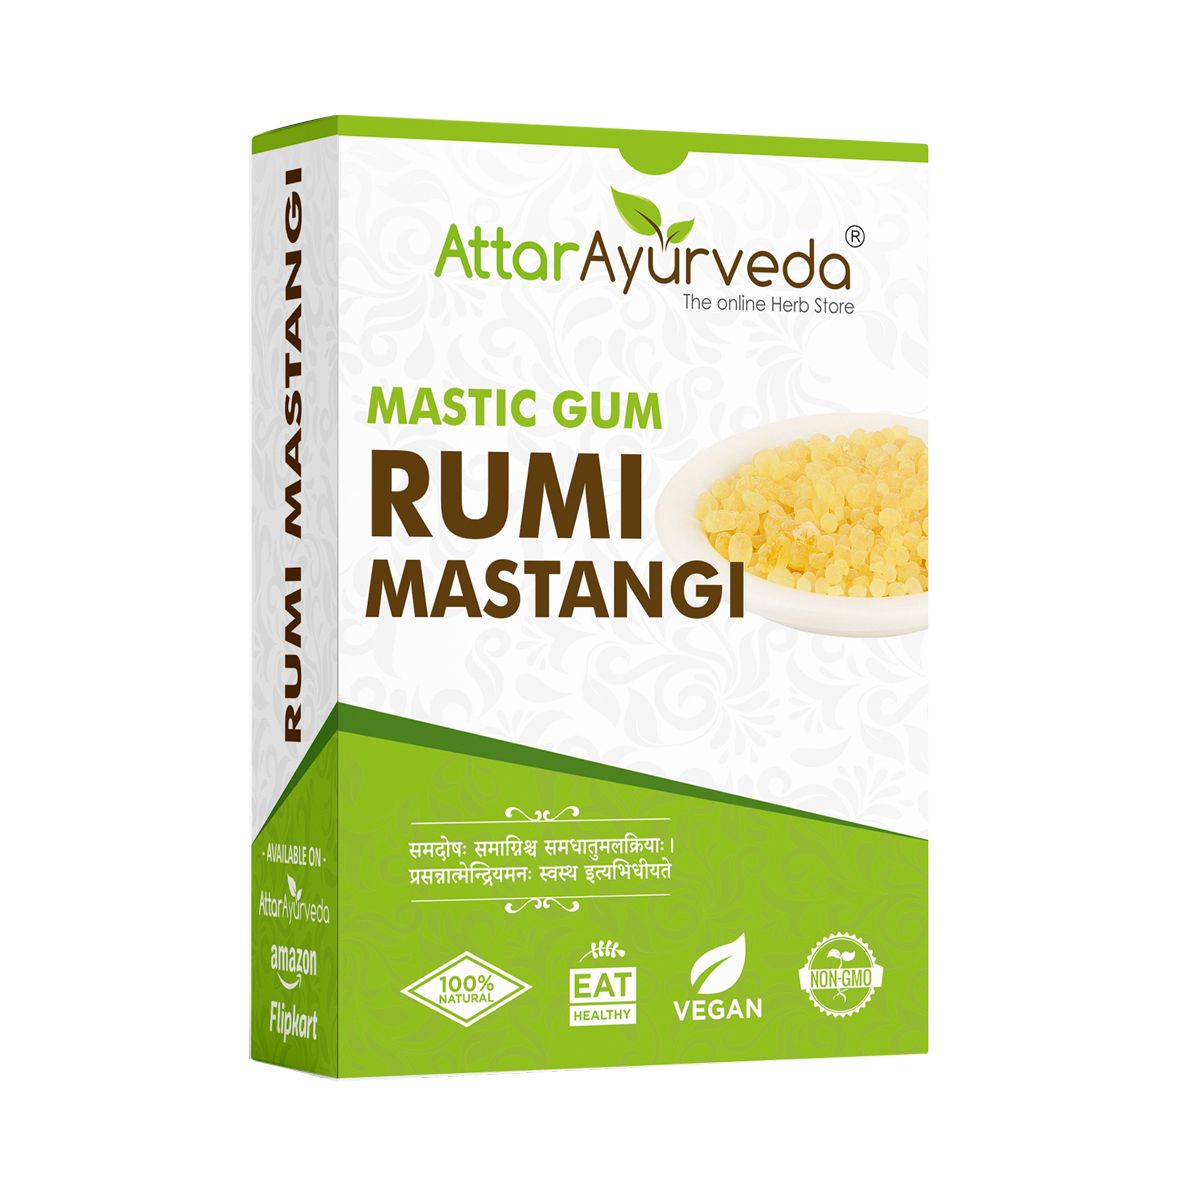 Rumi Mastagi - Roomi Mastangi - Mastic Gum - Pistacia Lenticus